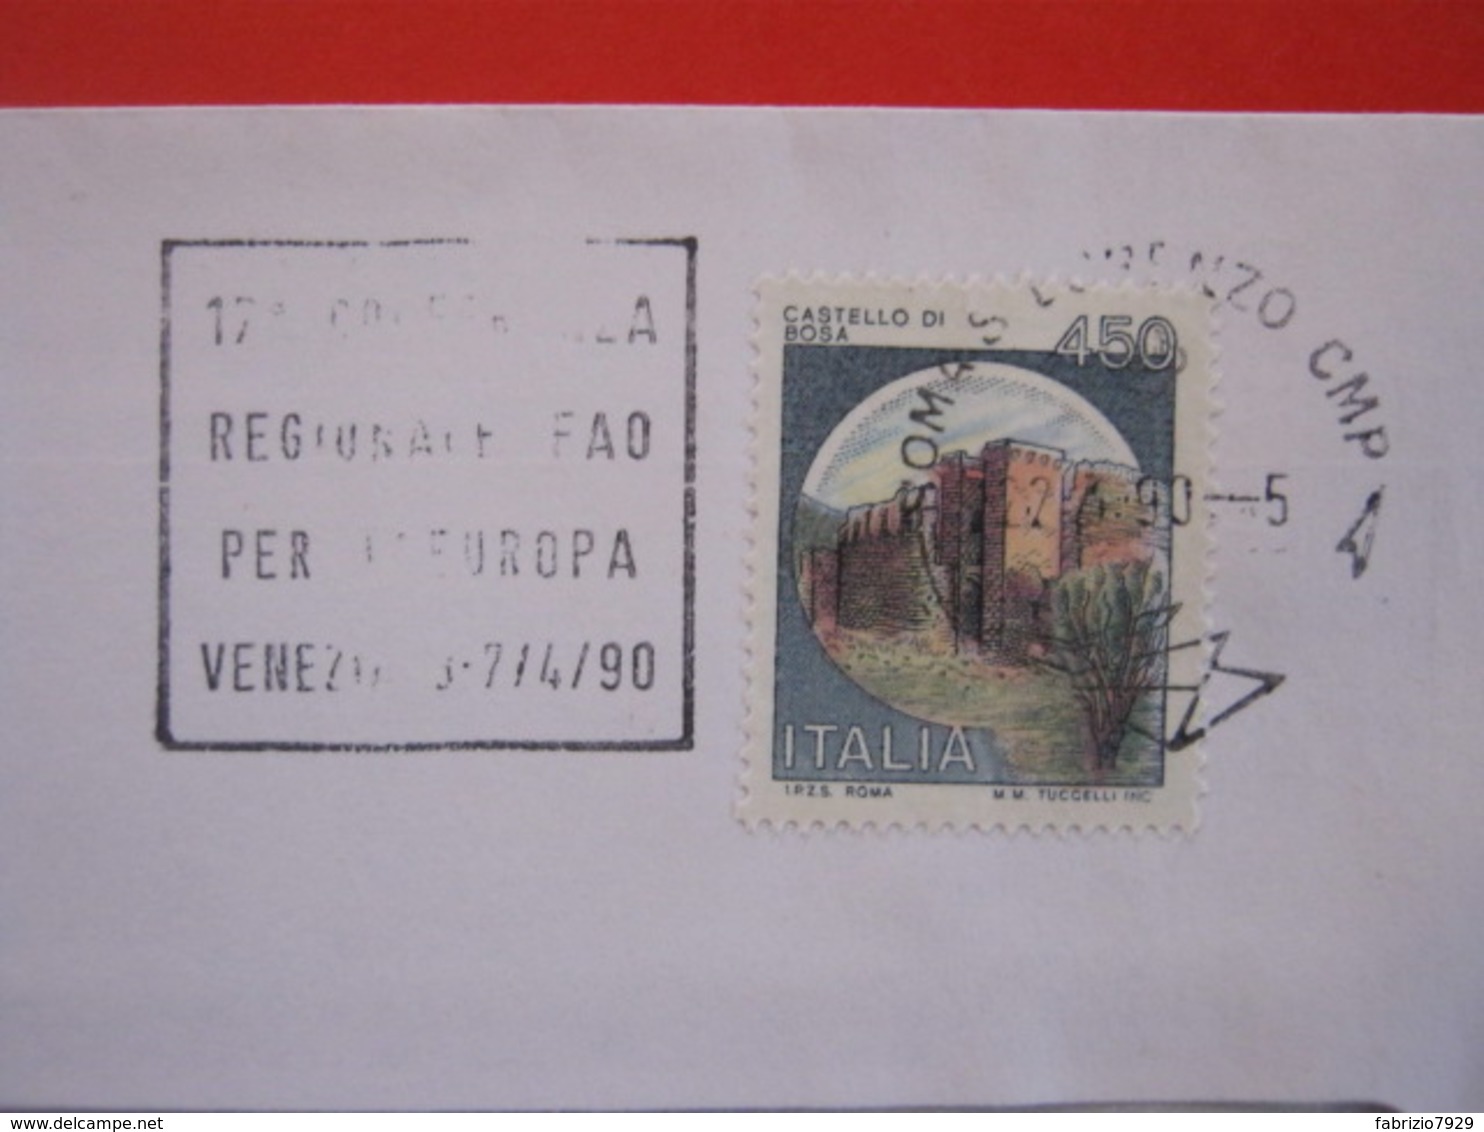 T1 ITALIA TARGHETTA - 1990 ROMA S. LORENZO 17^ CONFERENZA REGIONALE FAO PER EUROPA A VENEZIA ALIMENTAZIONE CIBO DESIGN - Alimentazione